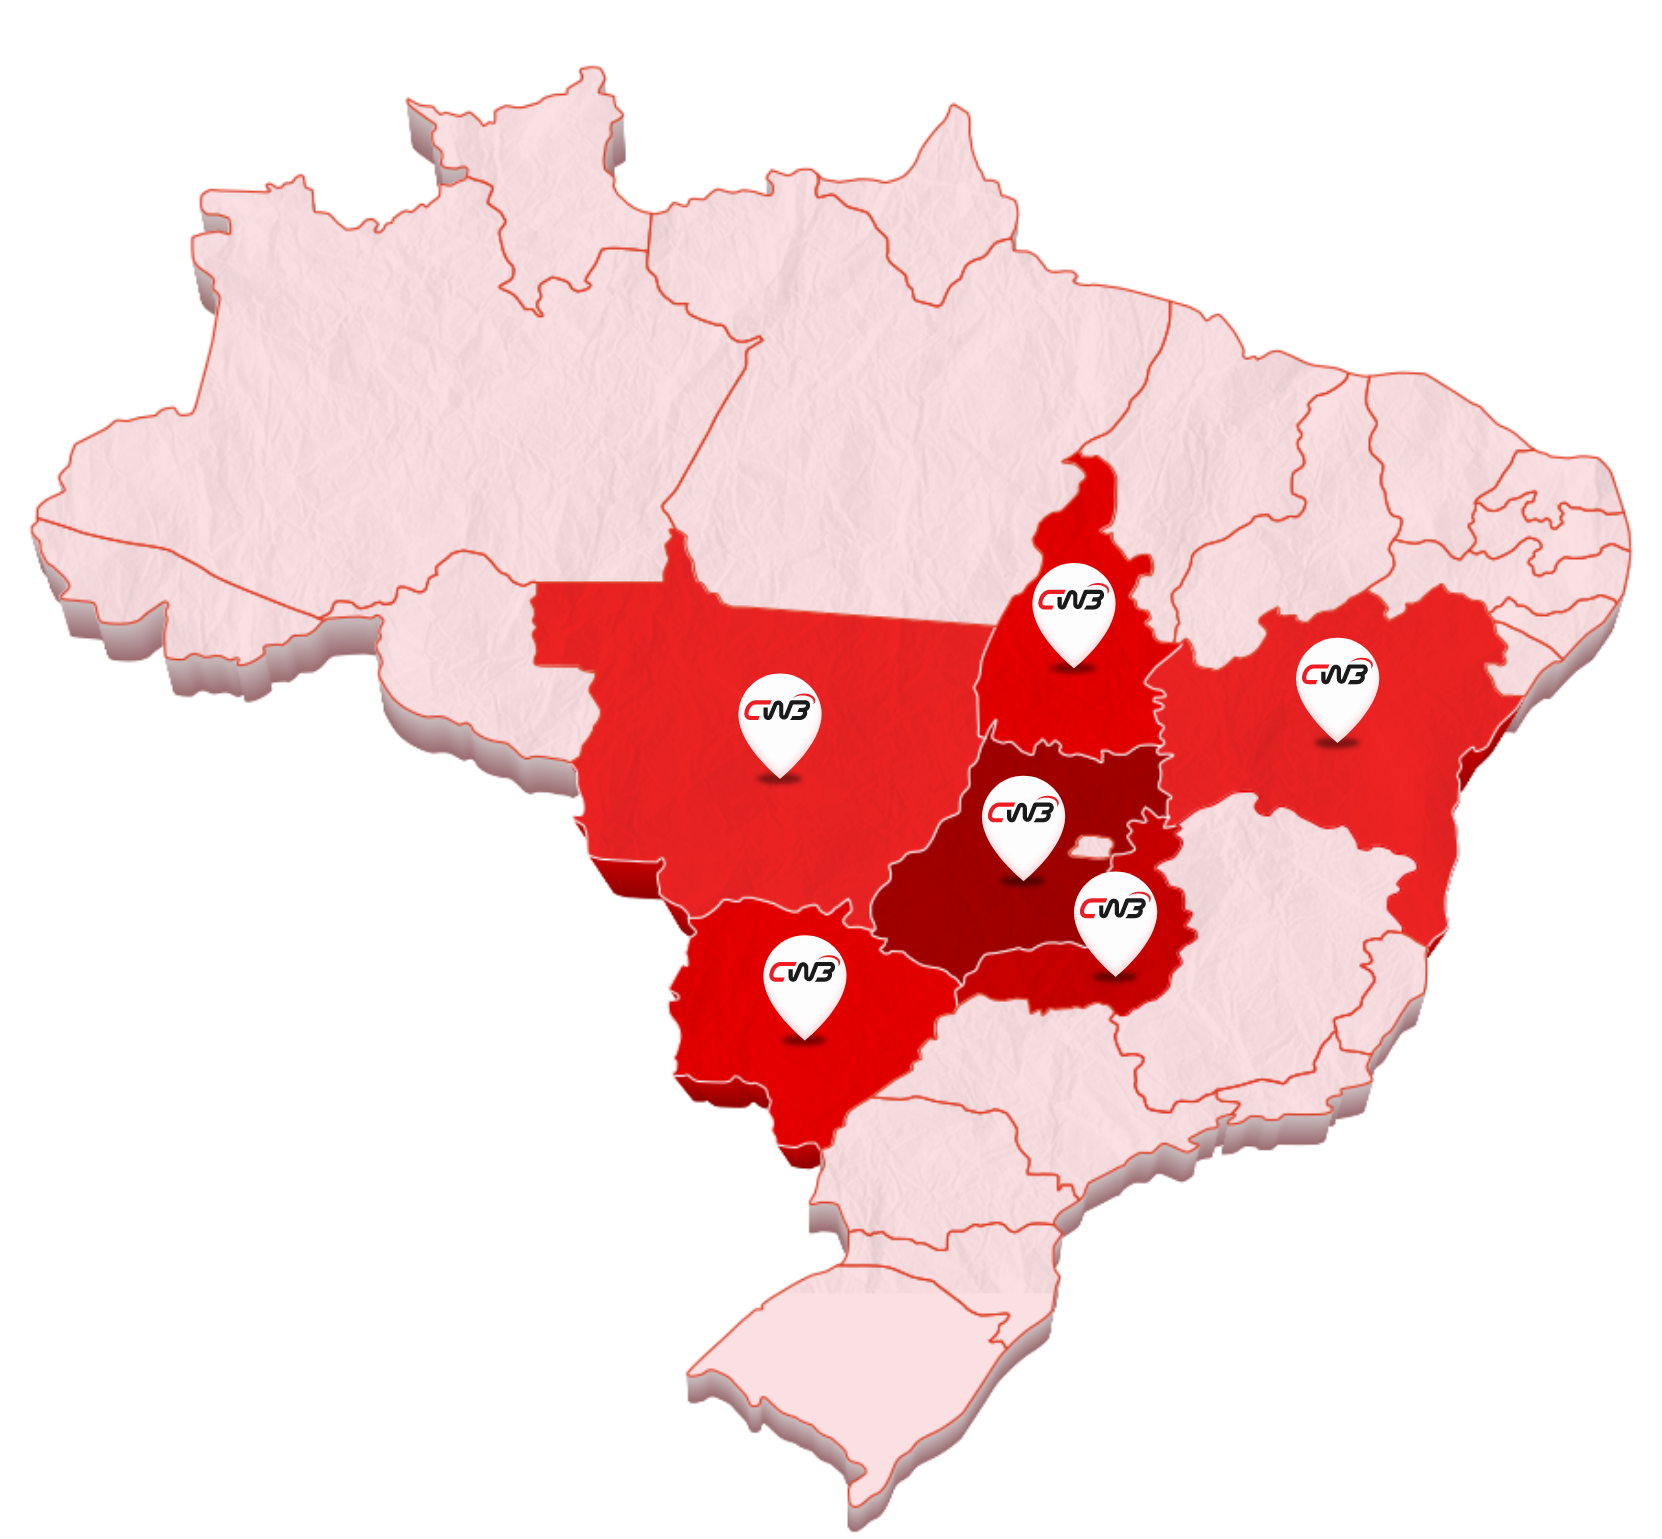 Mapa do Brasil com os vários locais onde a CW3 atua